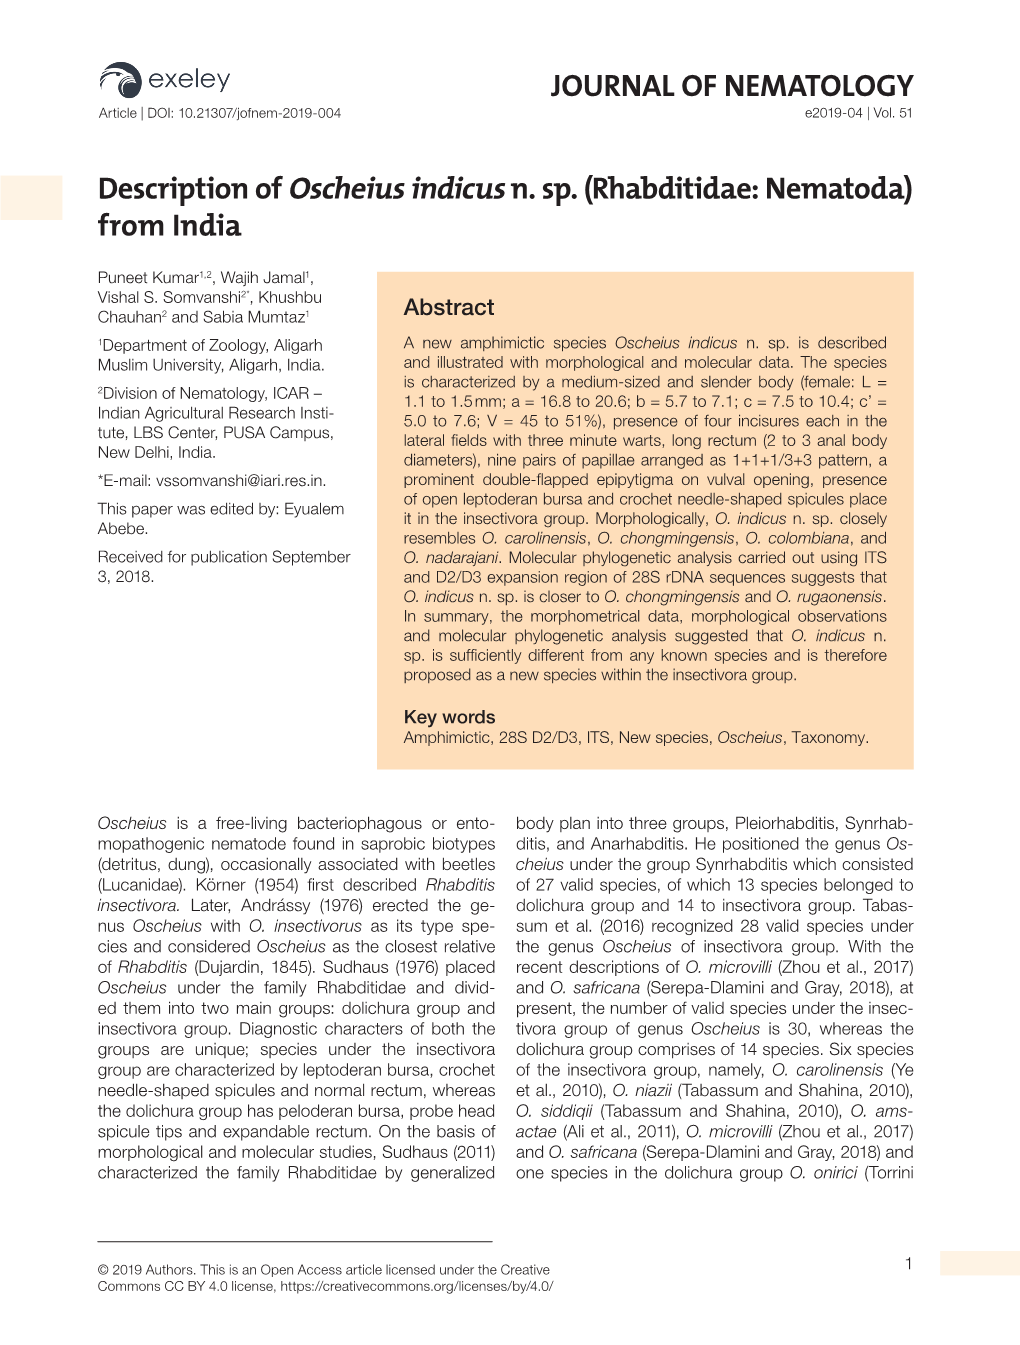 Description of Oscheius Indicus N. Sp. (Rhabditidae: Nematoda) from India